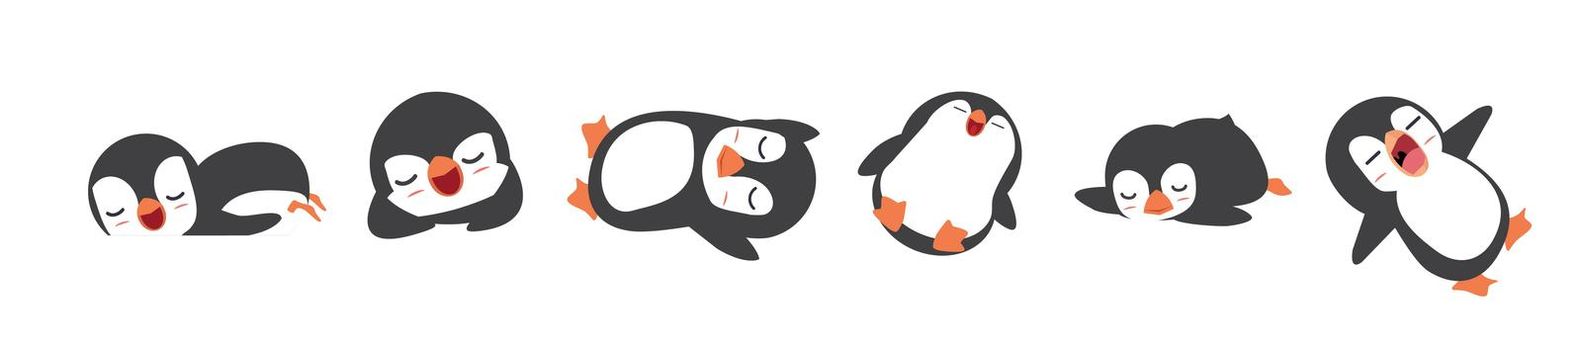 penguins sleeping cartoon Vector Collection 